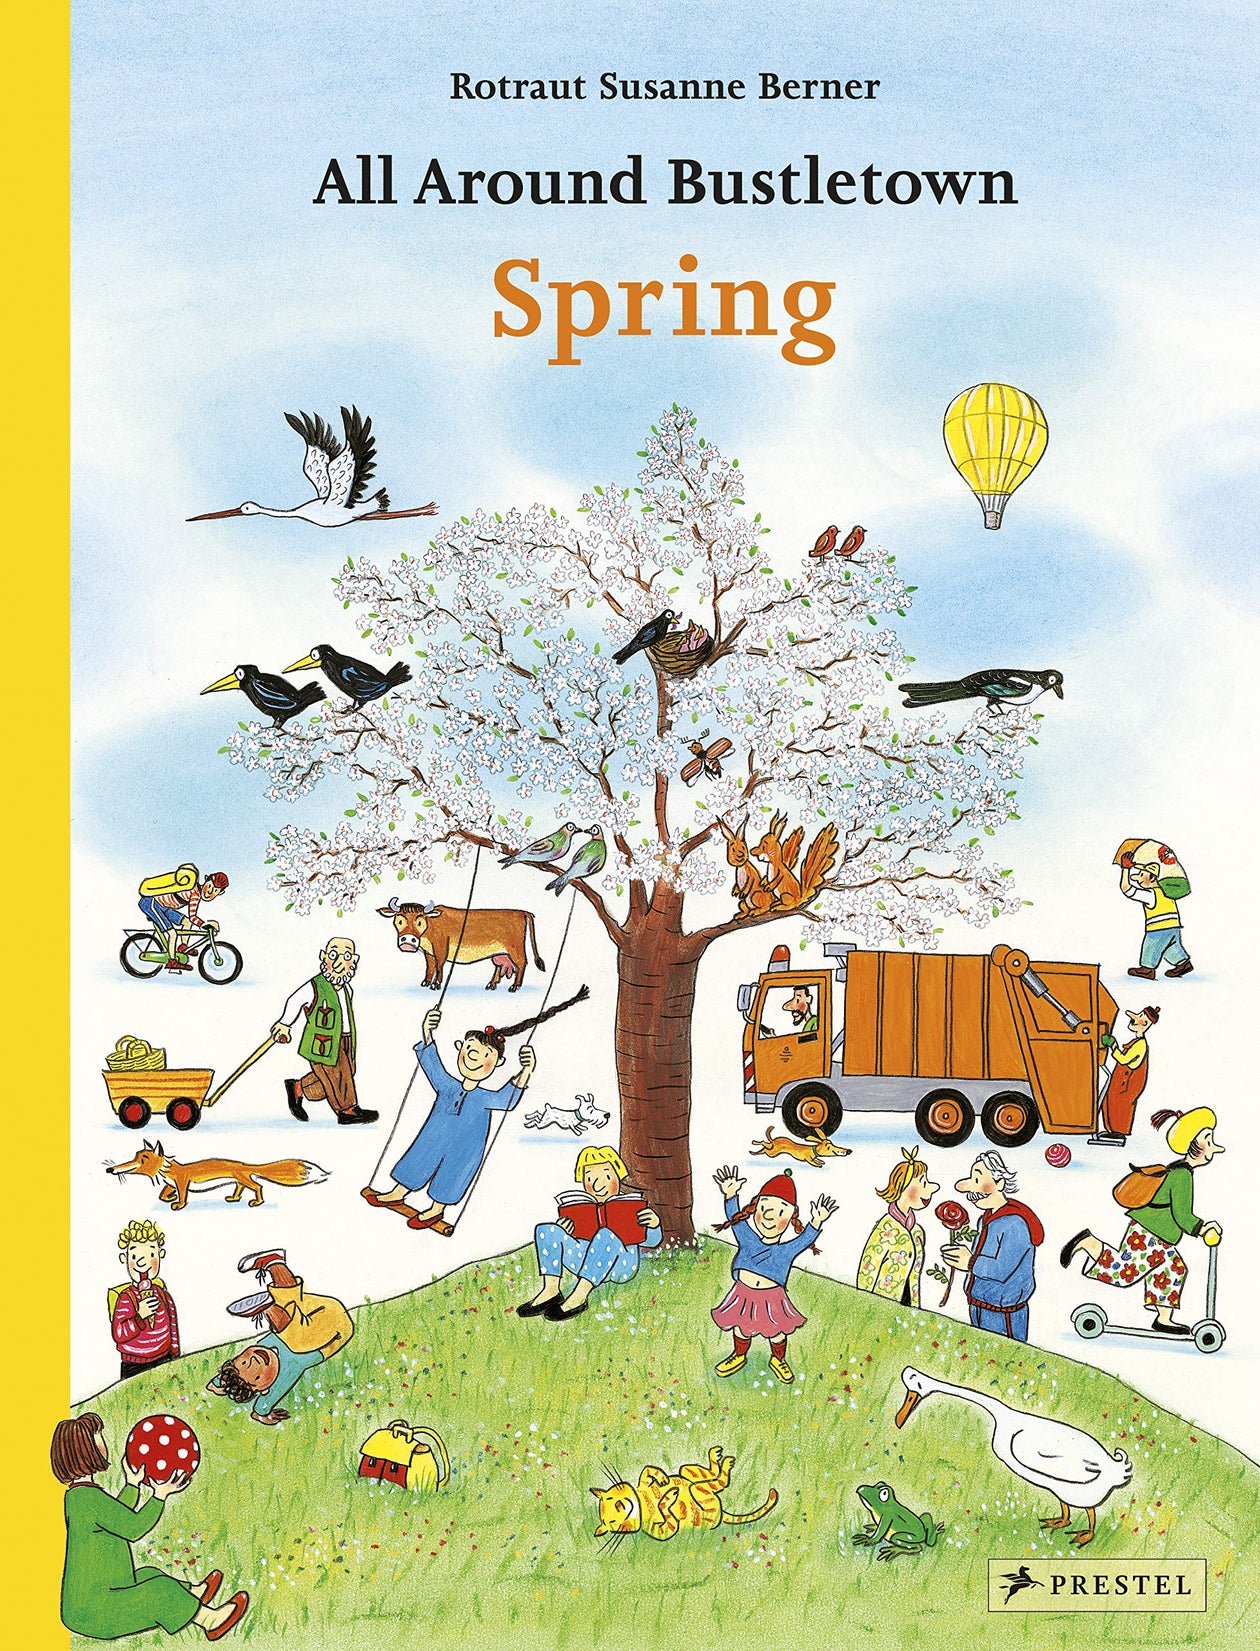 All Around Bustletown - Spring, by Rotraut Susanne Berner